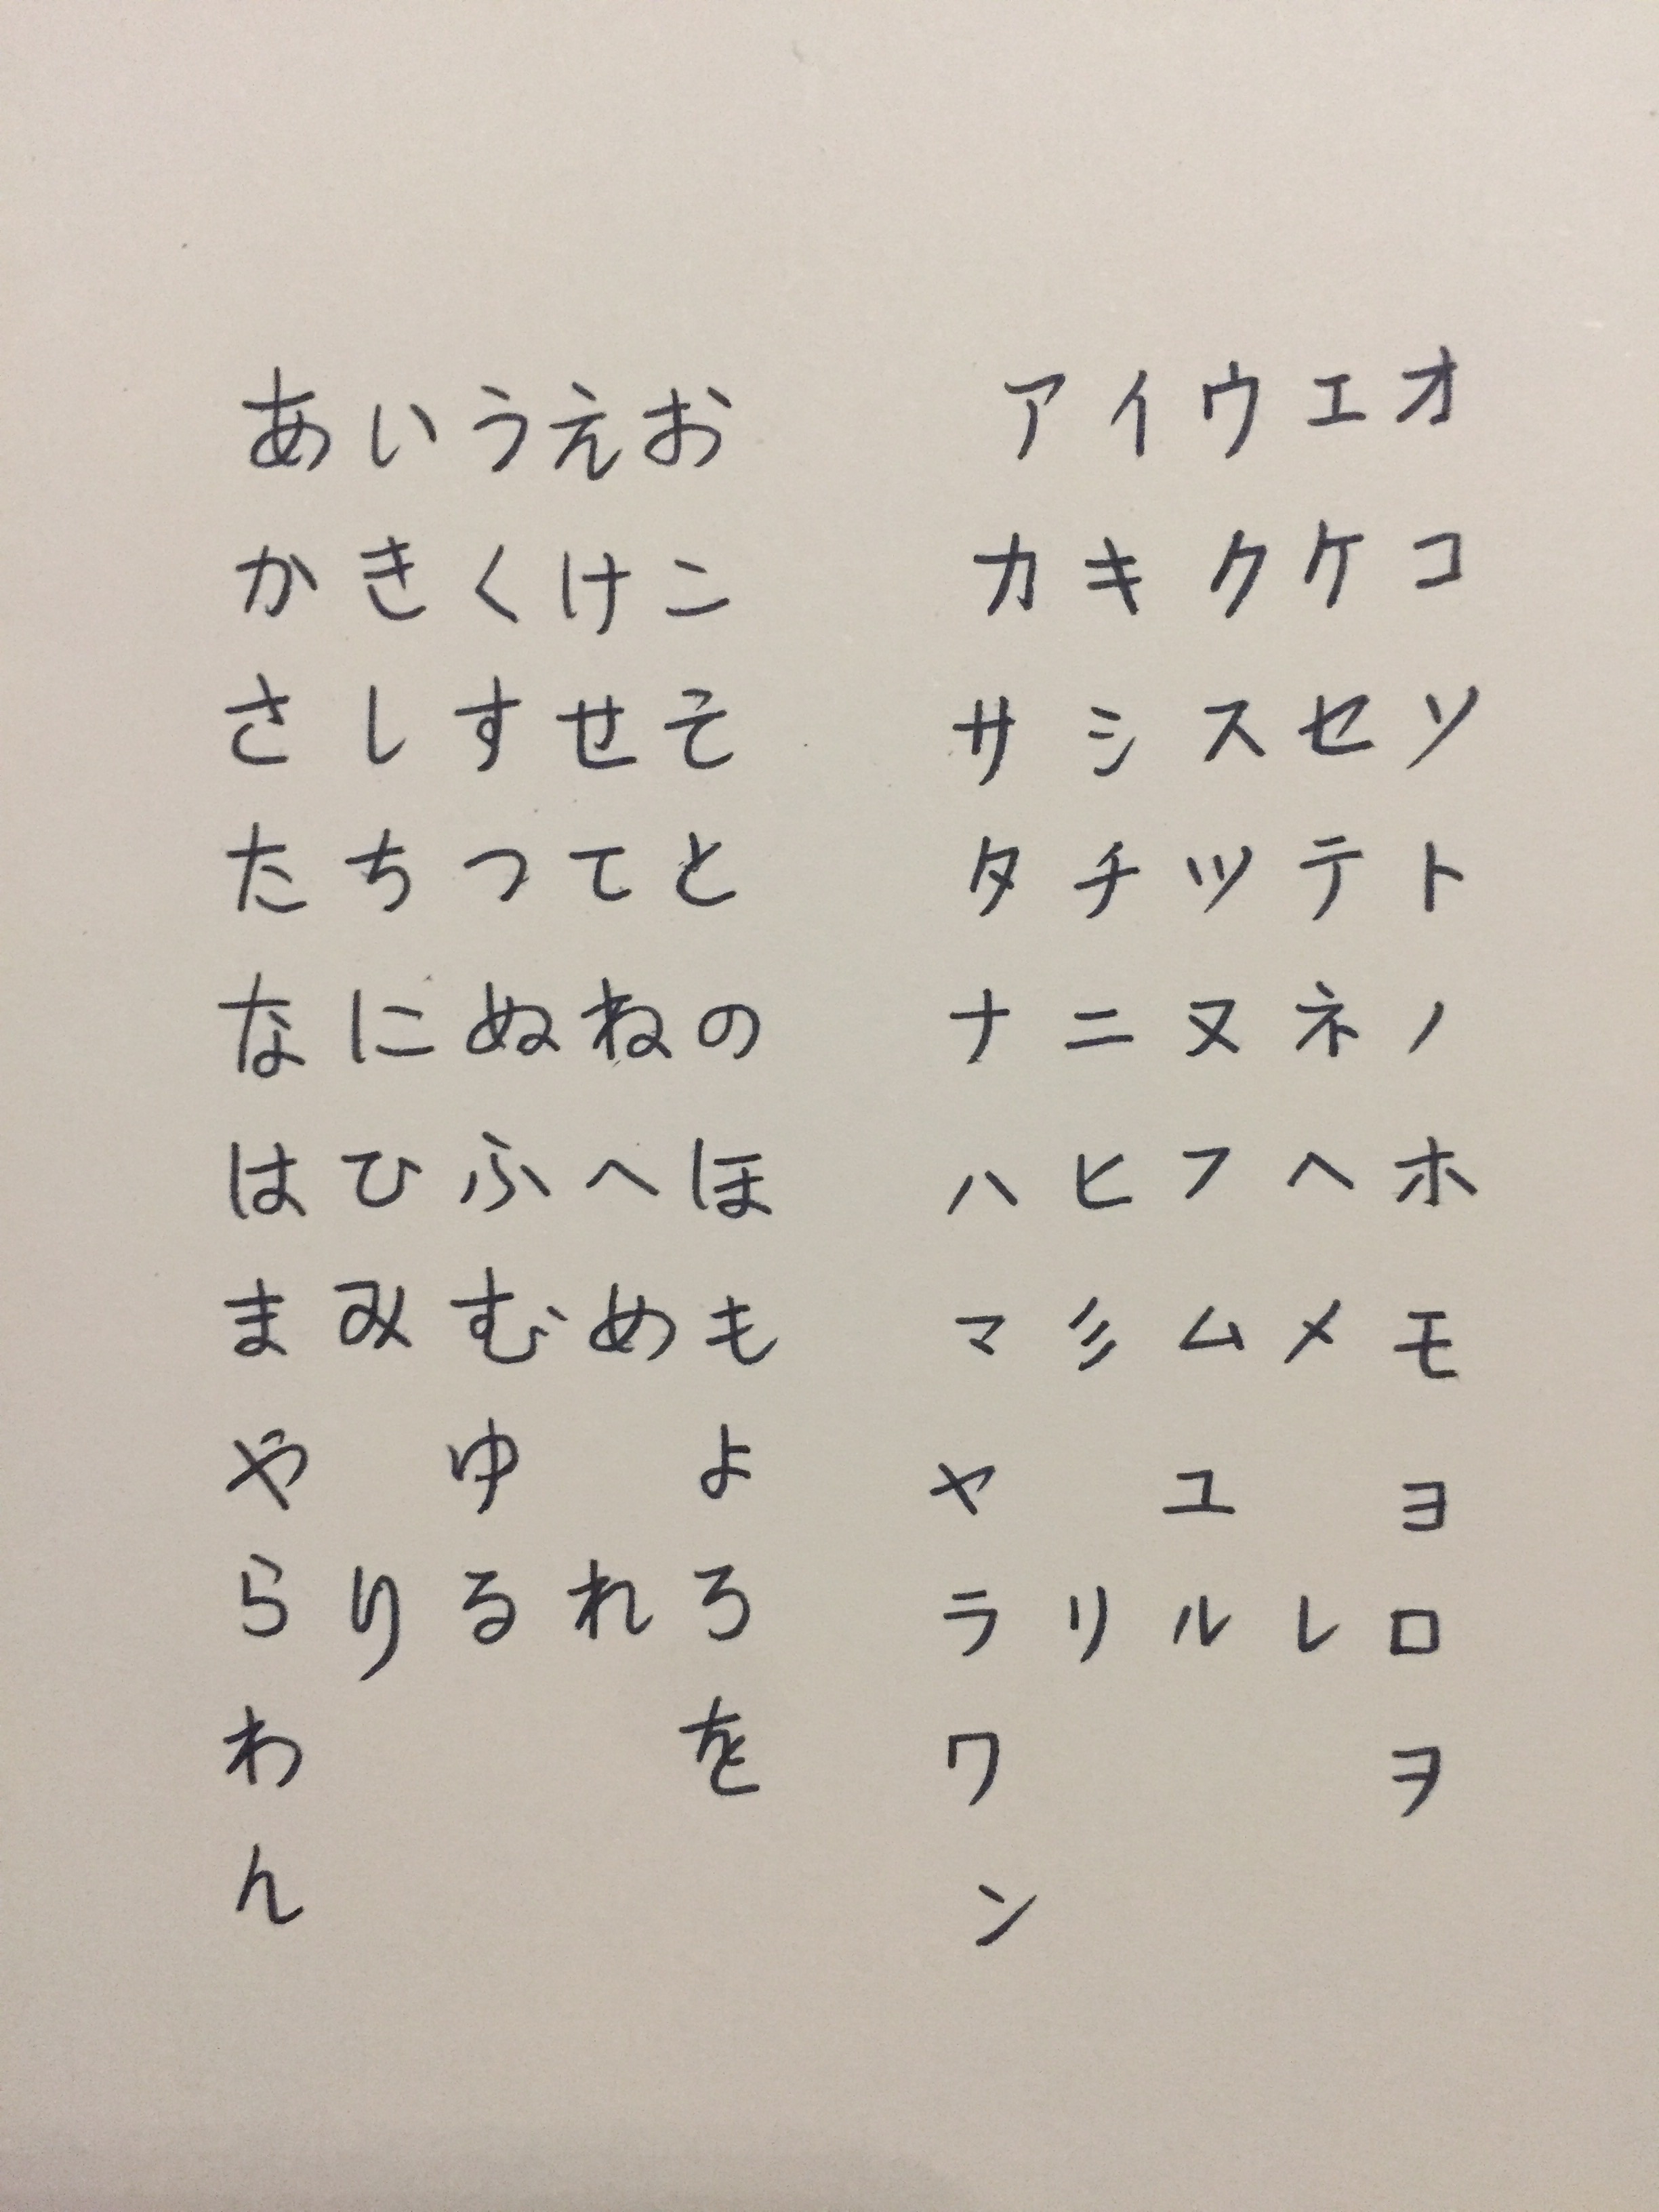 日语手写五十音图大赛